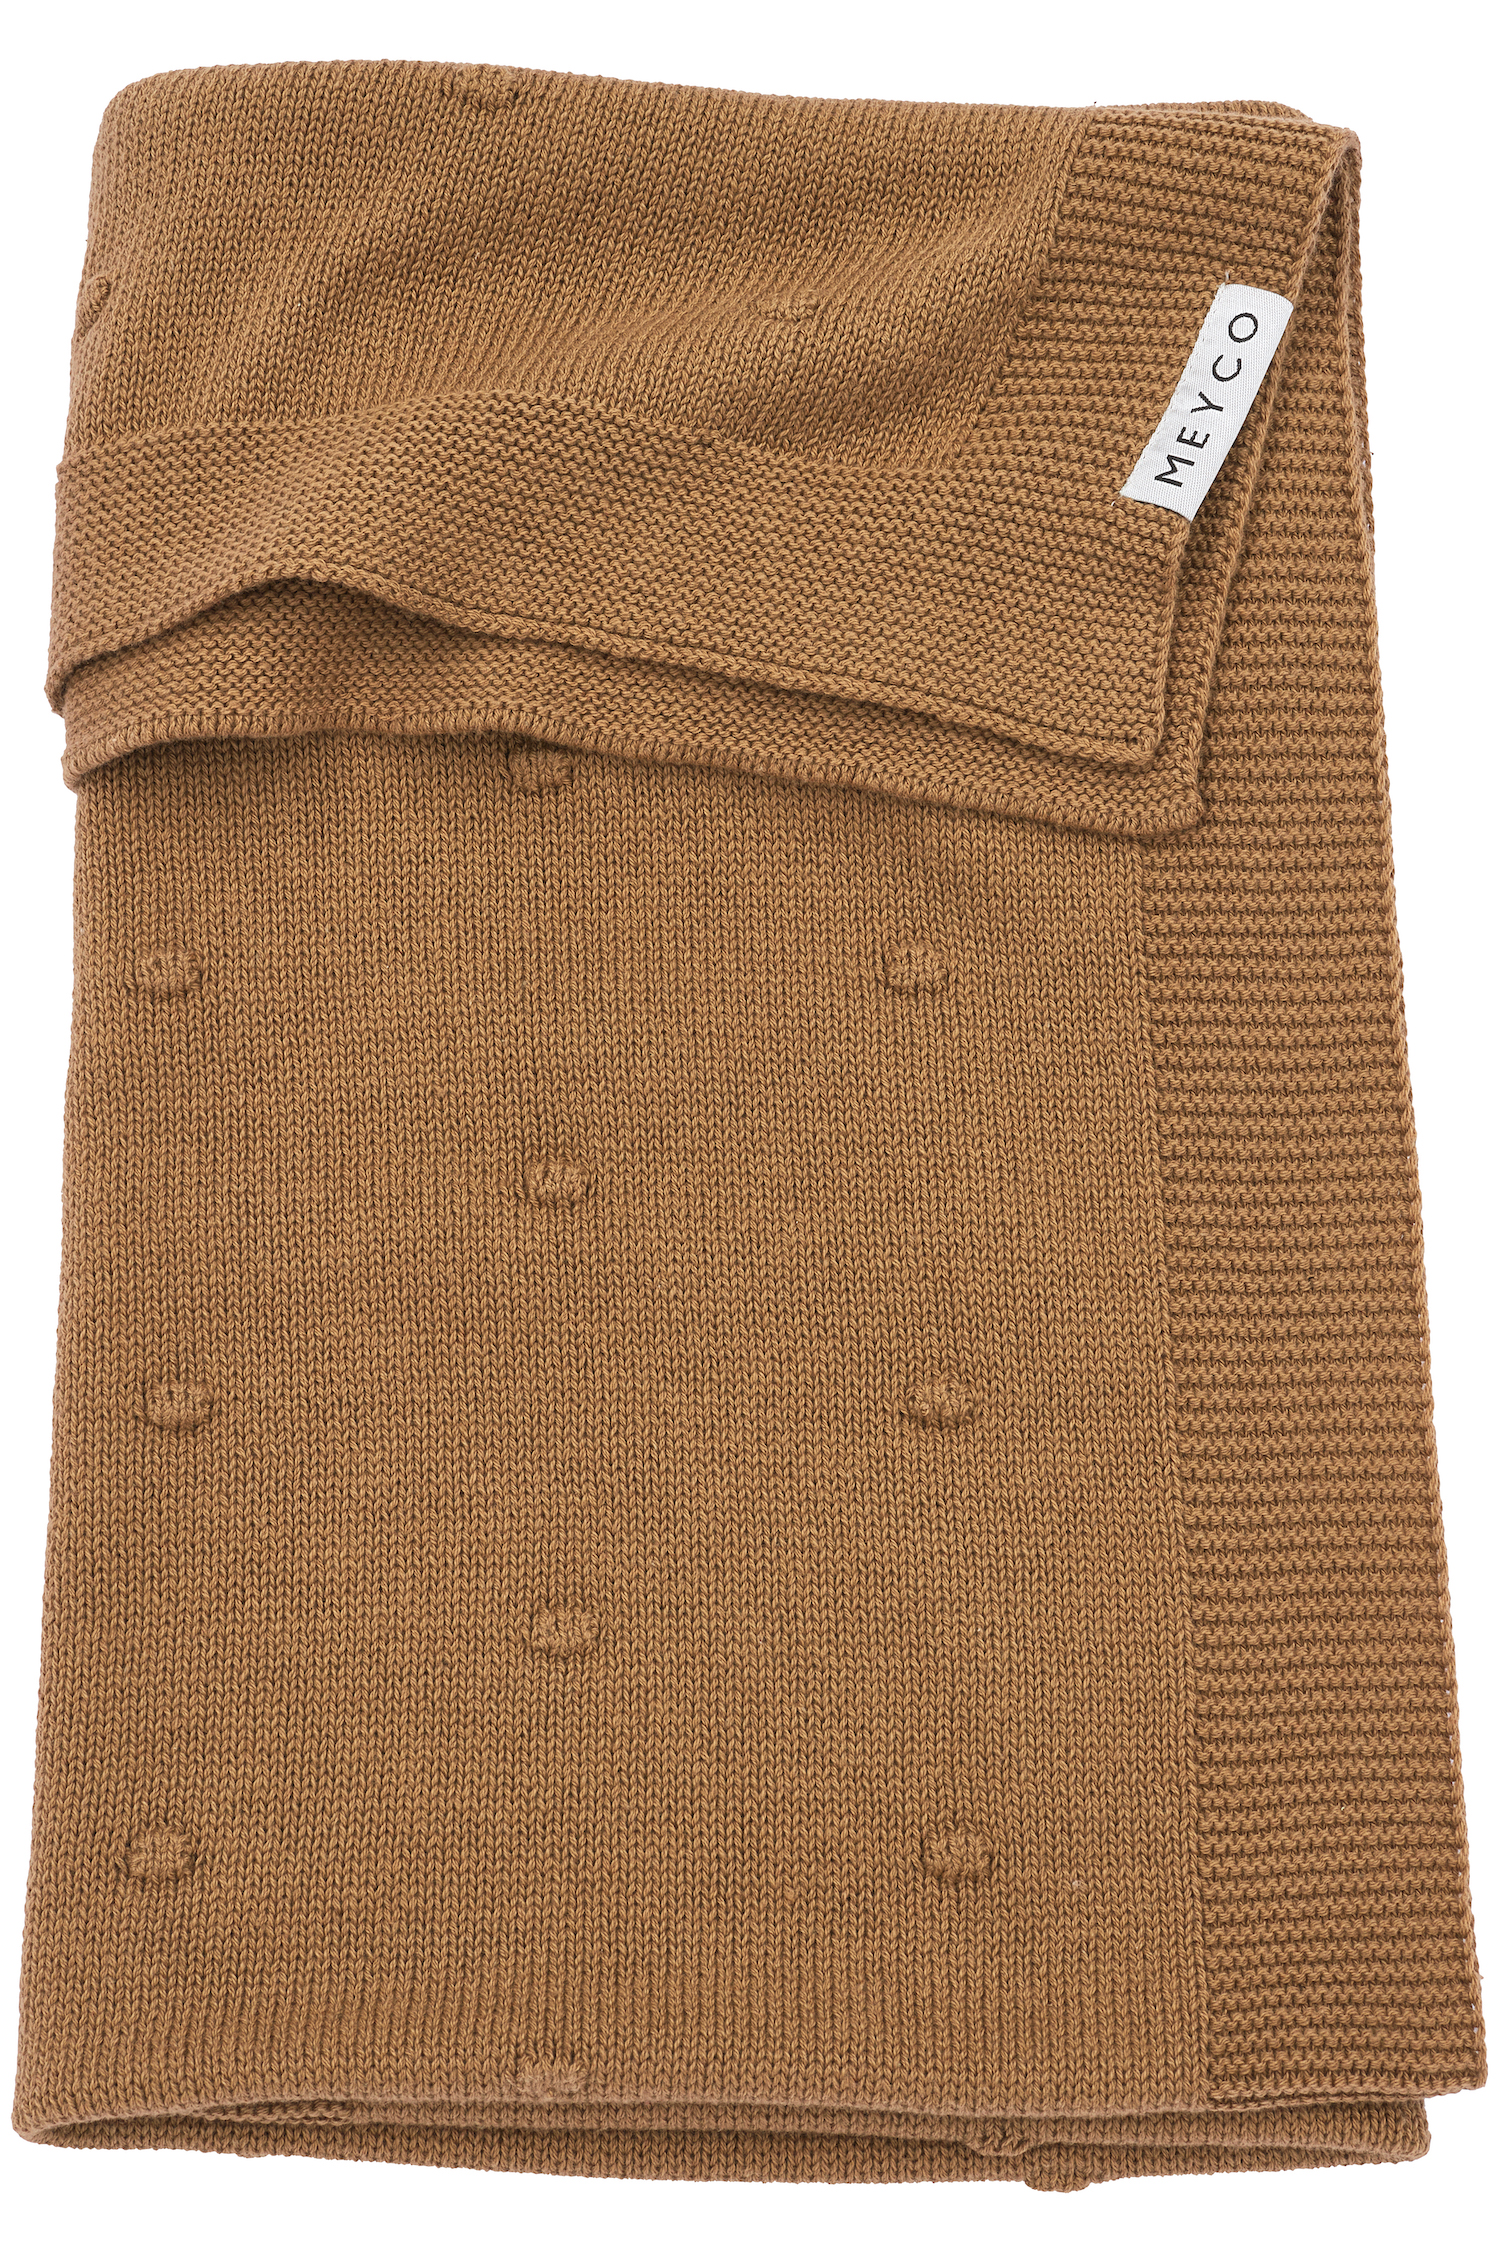 Ledikant deken Mini Knots - toffee - 100x150cm